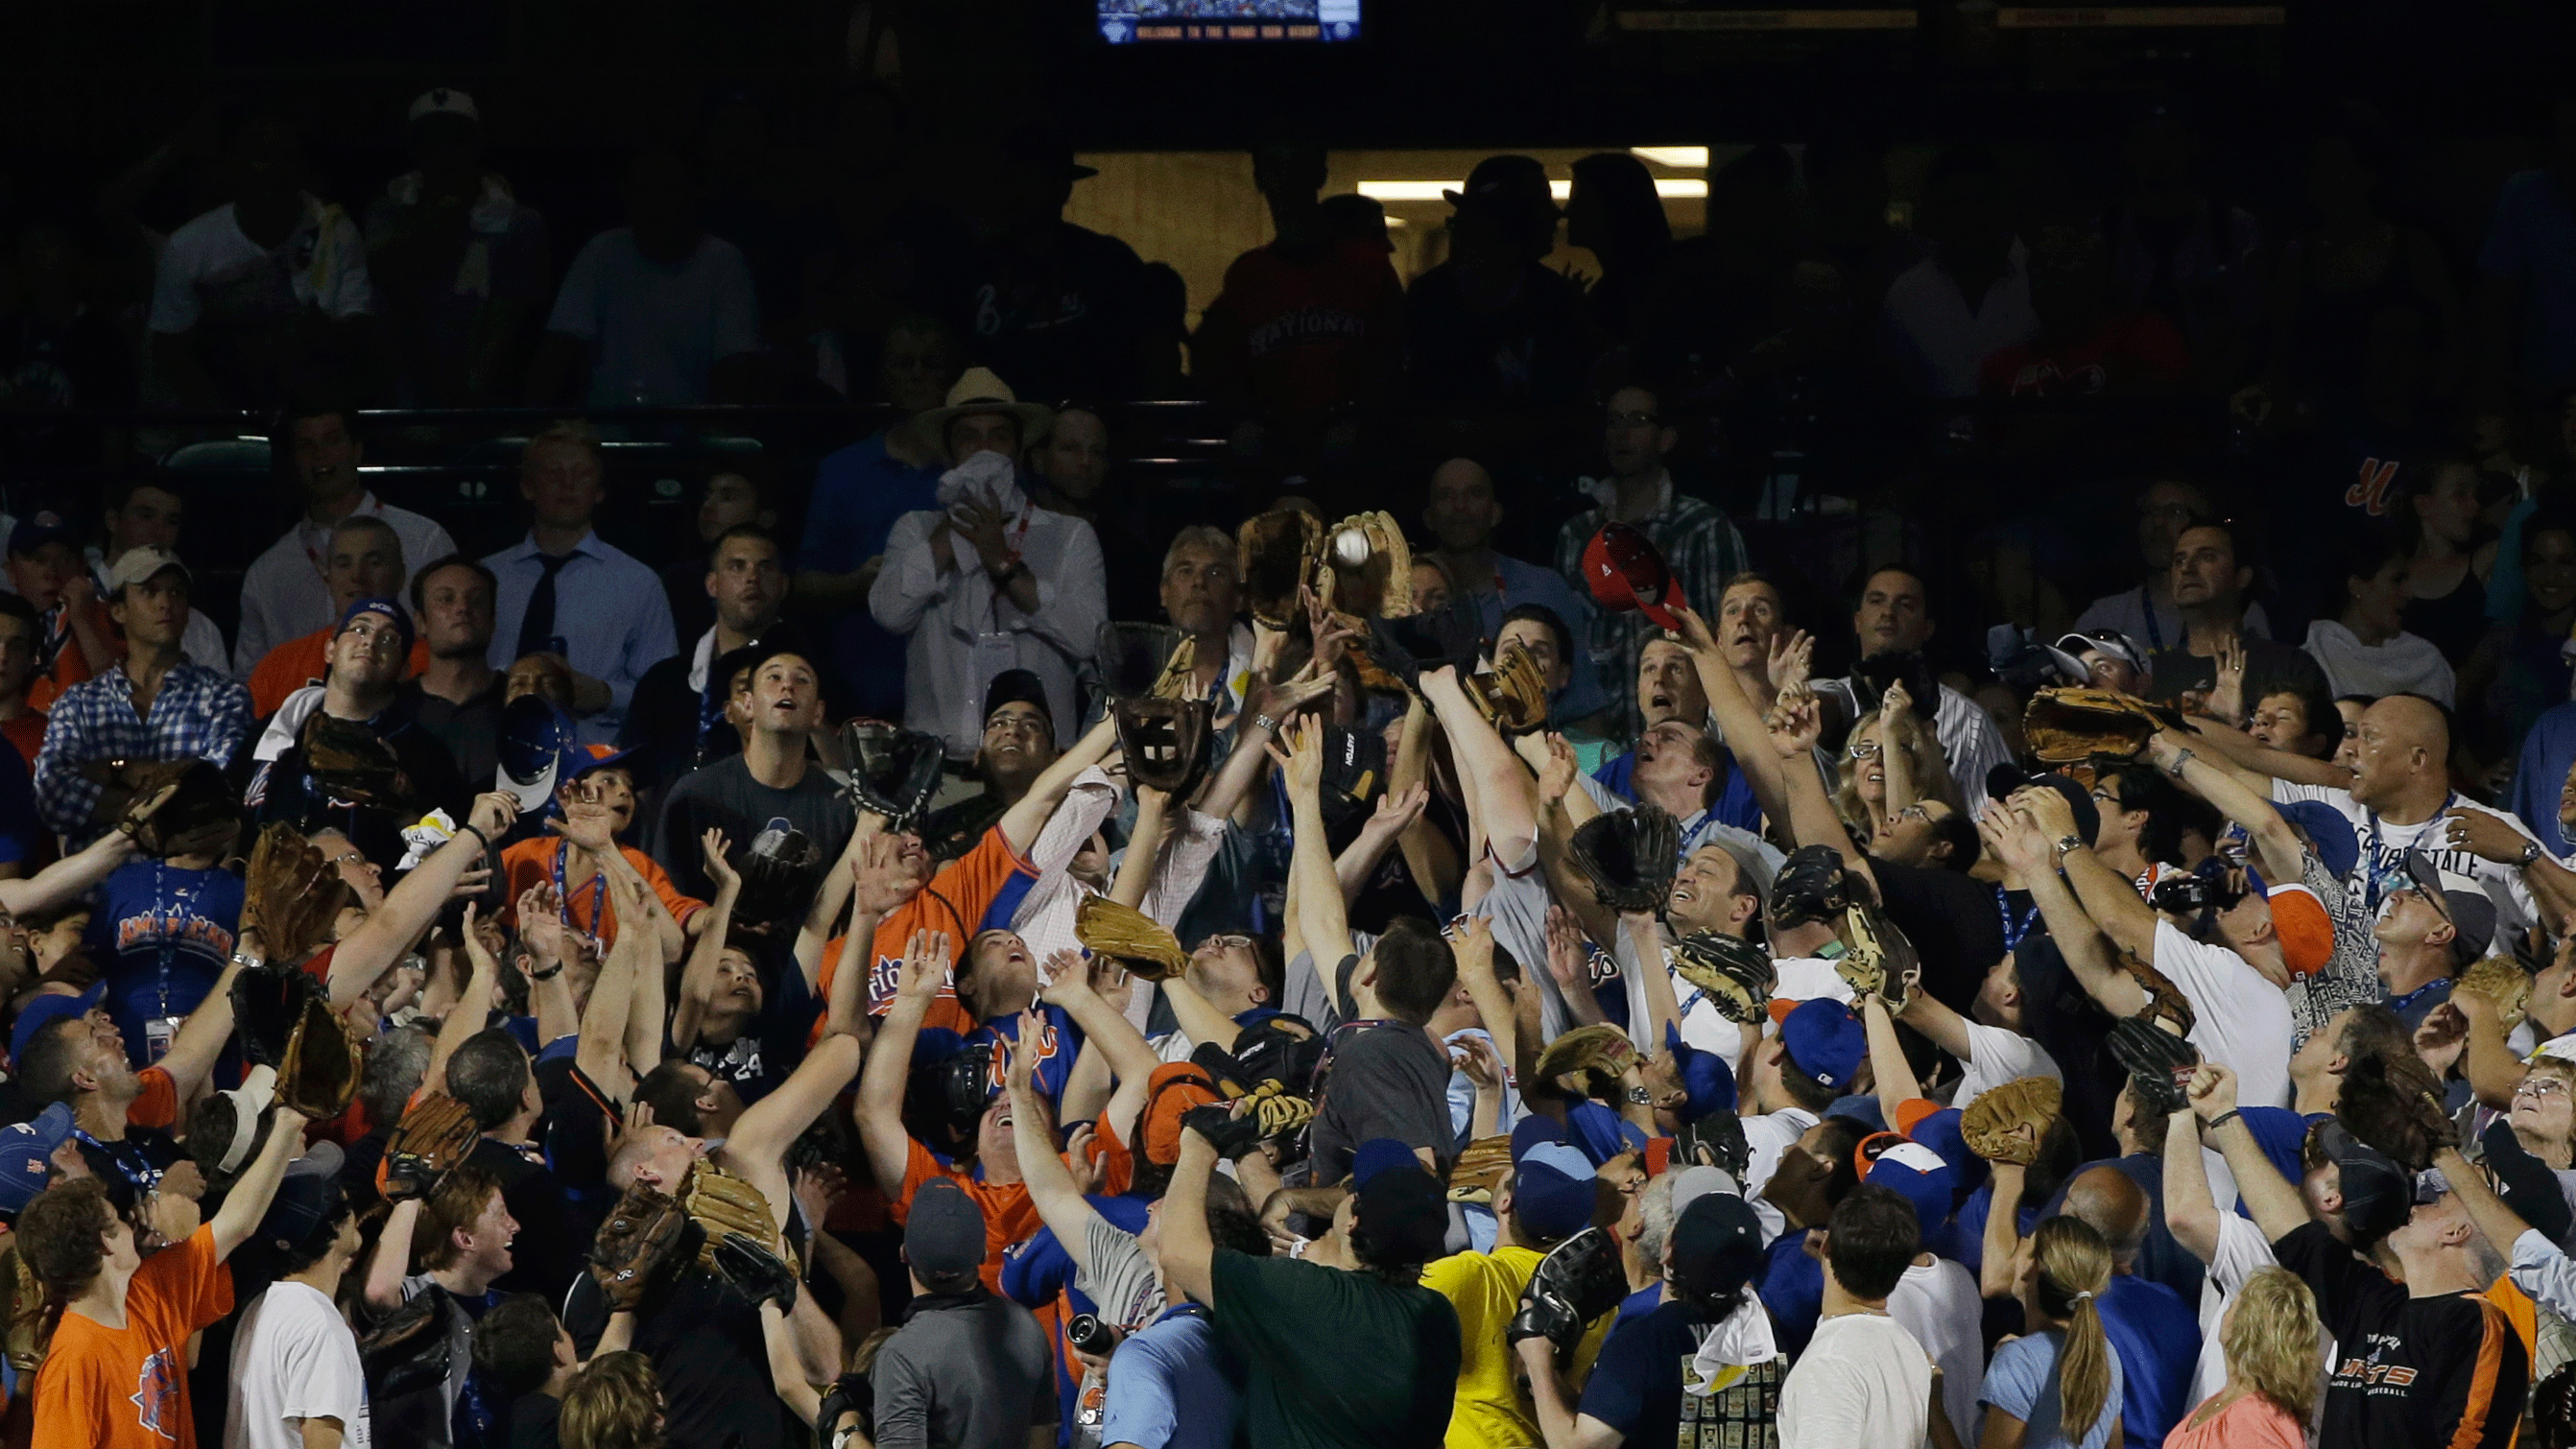 A fan catches a home run. (AP/Matt Slocum)